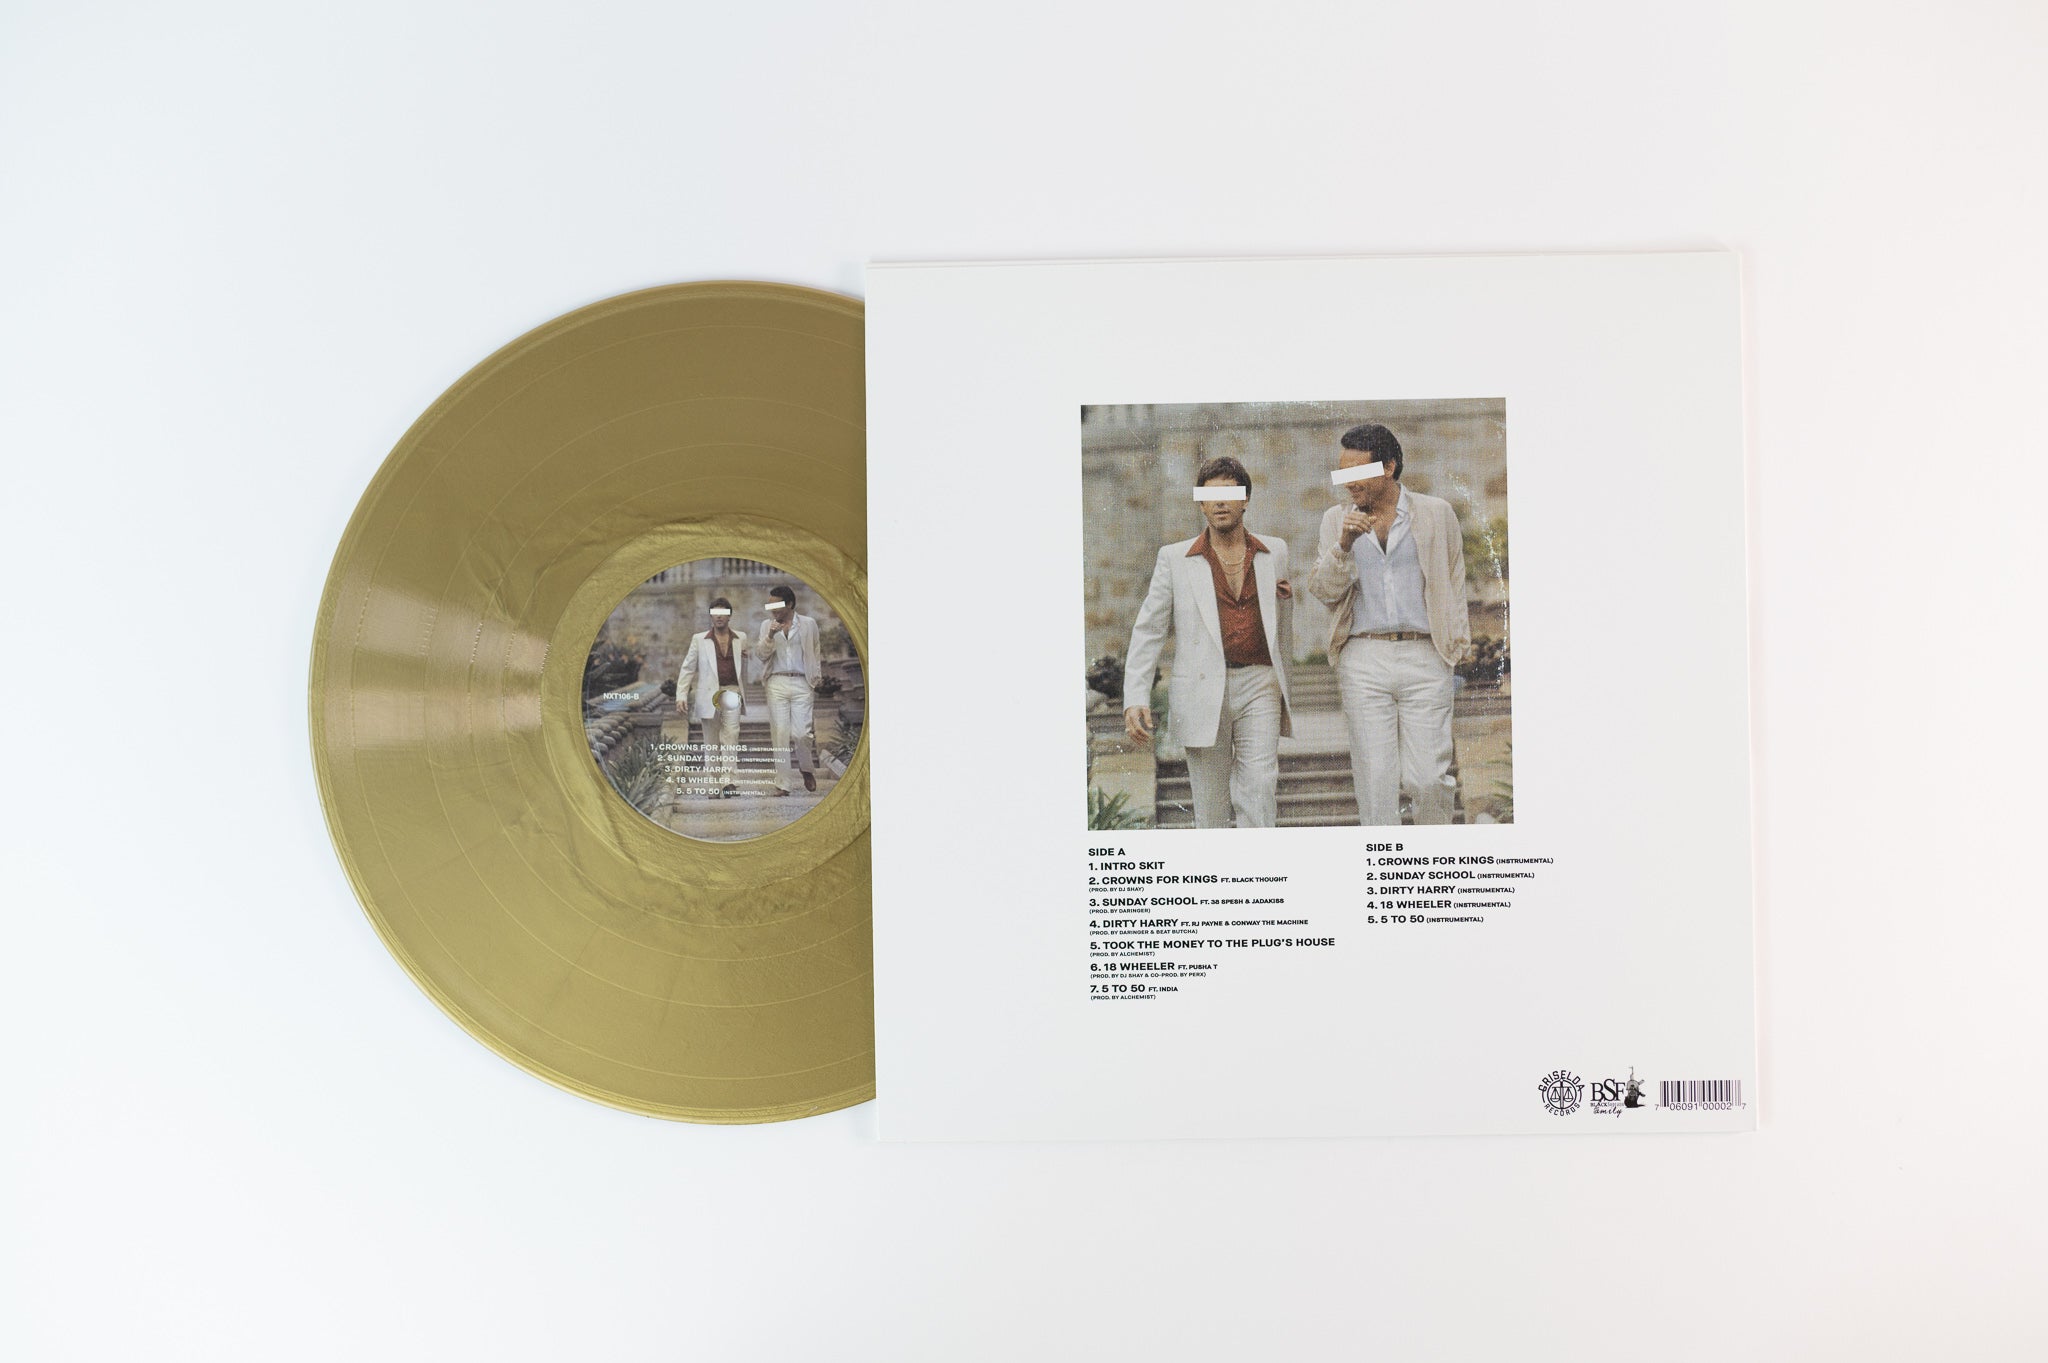 Benny - The Plugs I Met on Griselda Limited Metallic Gold Vinyl